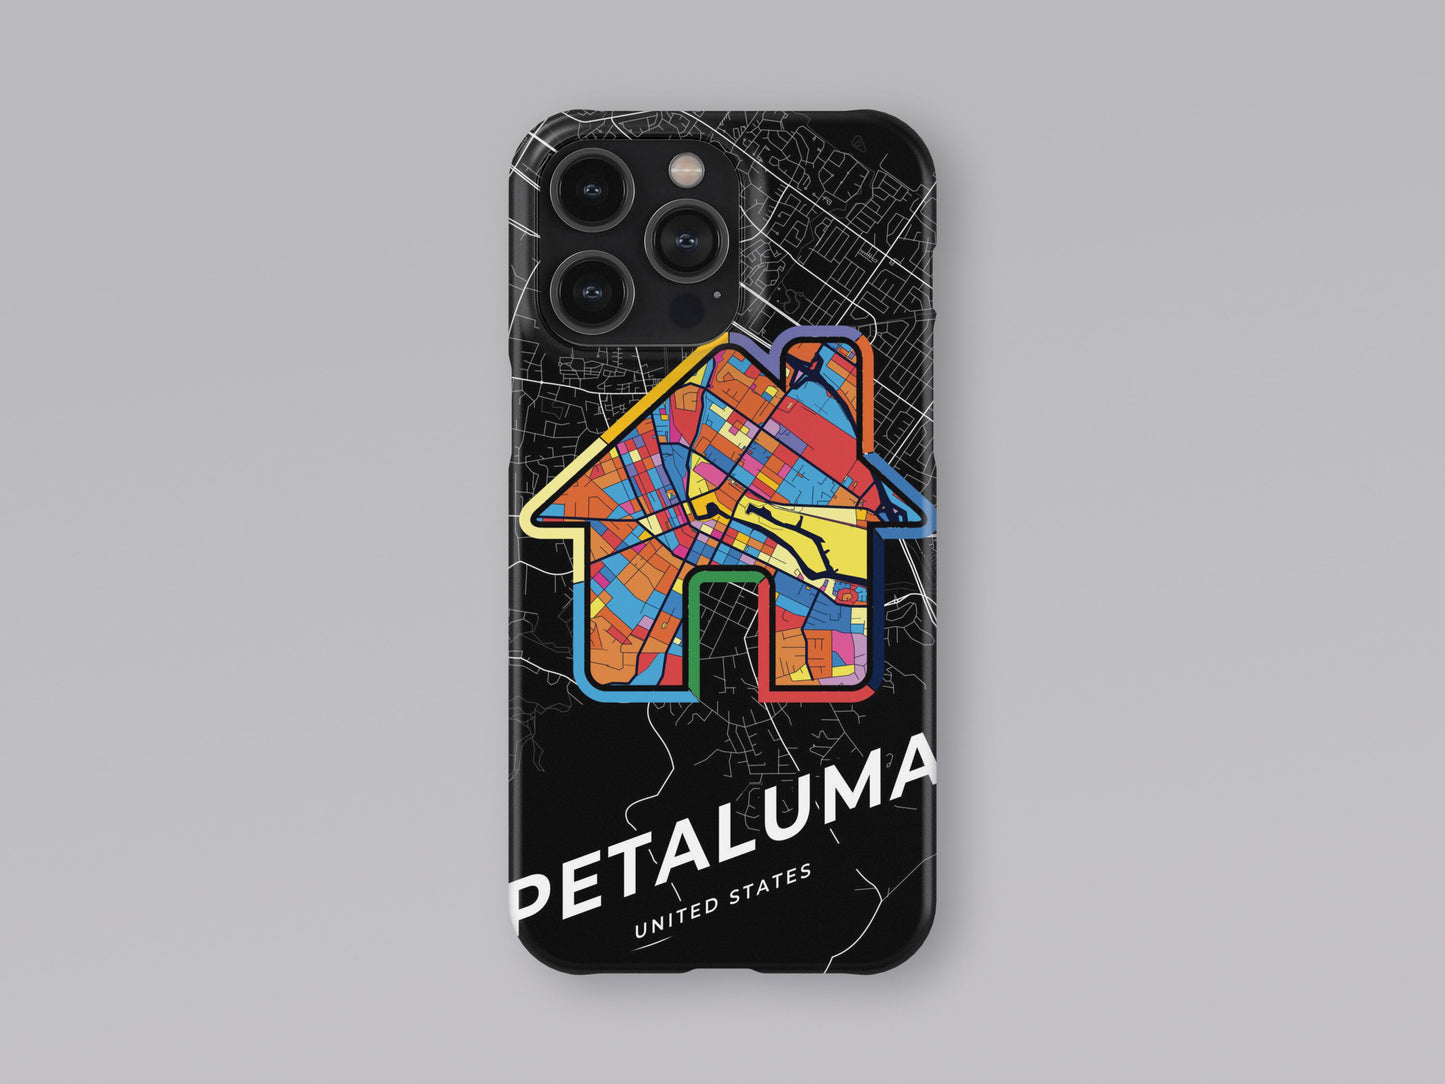 Petaluma California slim phone case with colorful icon 3